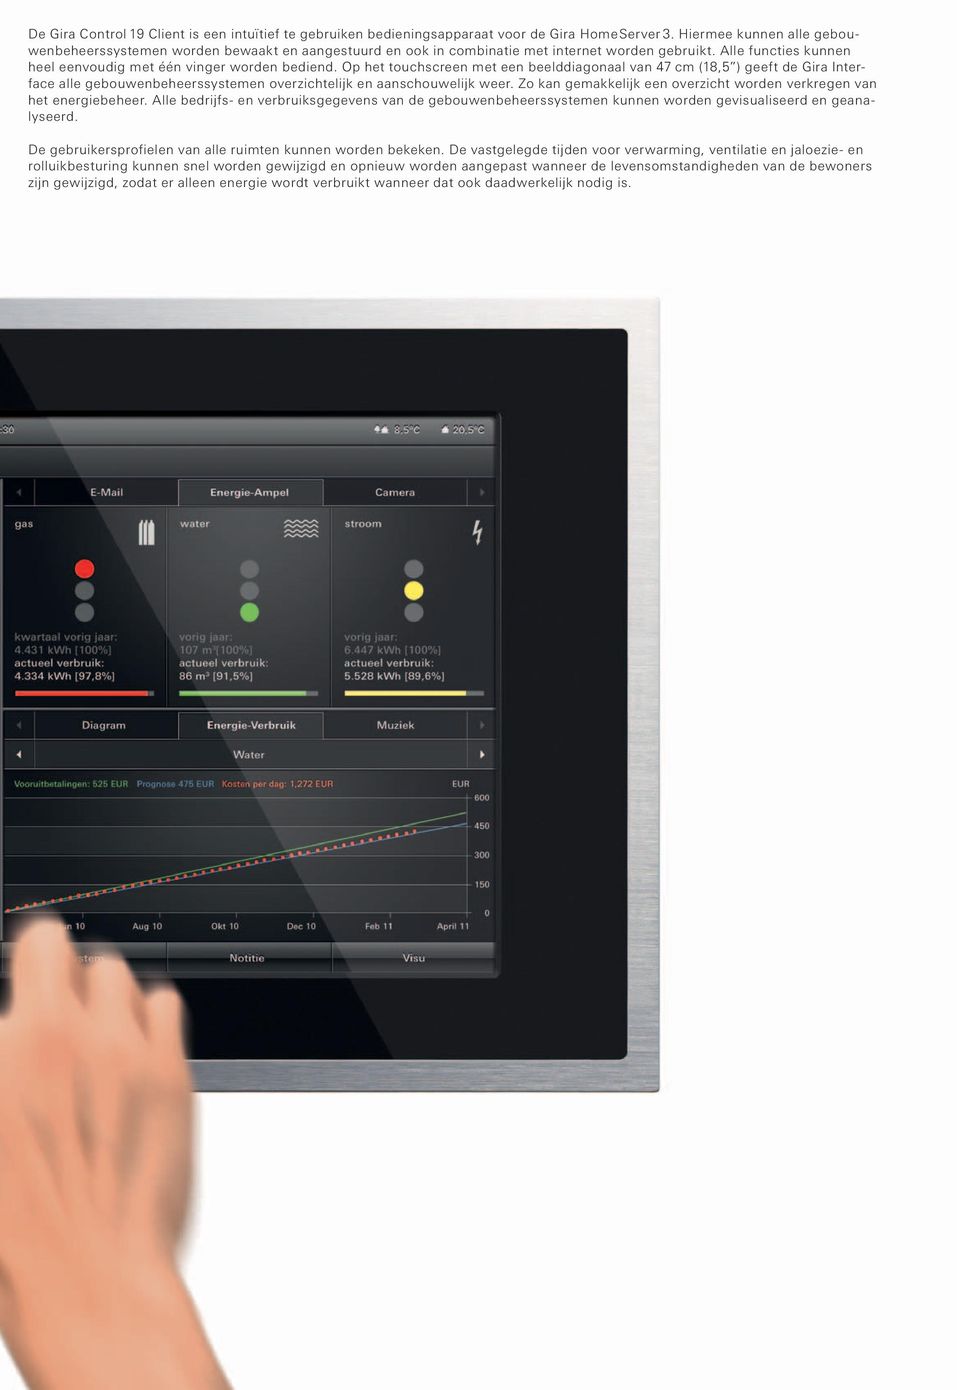 Op het touchscreen met een beelddiagonaal van 47 cm (18,5 ) geeft de Gira Interface alle gebouwenbeheerssystemen overzichtelijk en aanschouwelijk weer.